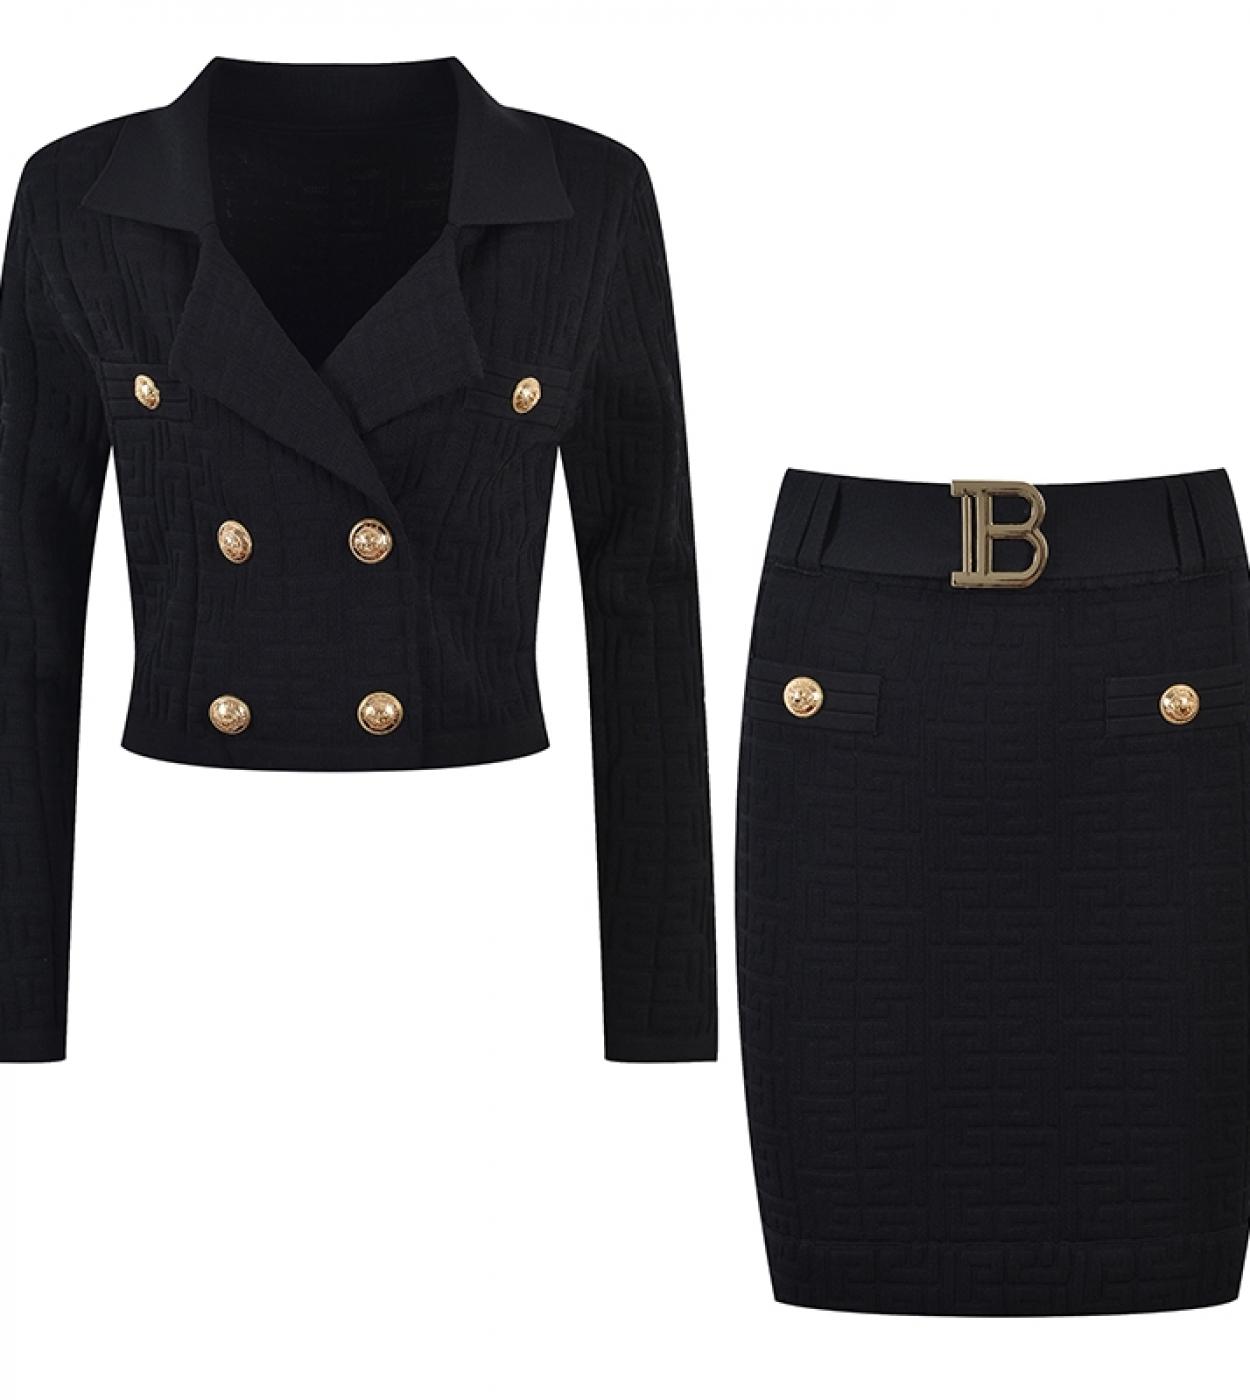 Conjuntos de falda de punto negro blanco Otoño Invierno nueva falda traje cuello Top cinturón lápiz ajustado Bodycon conjuntos d